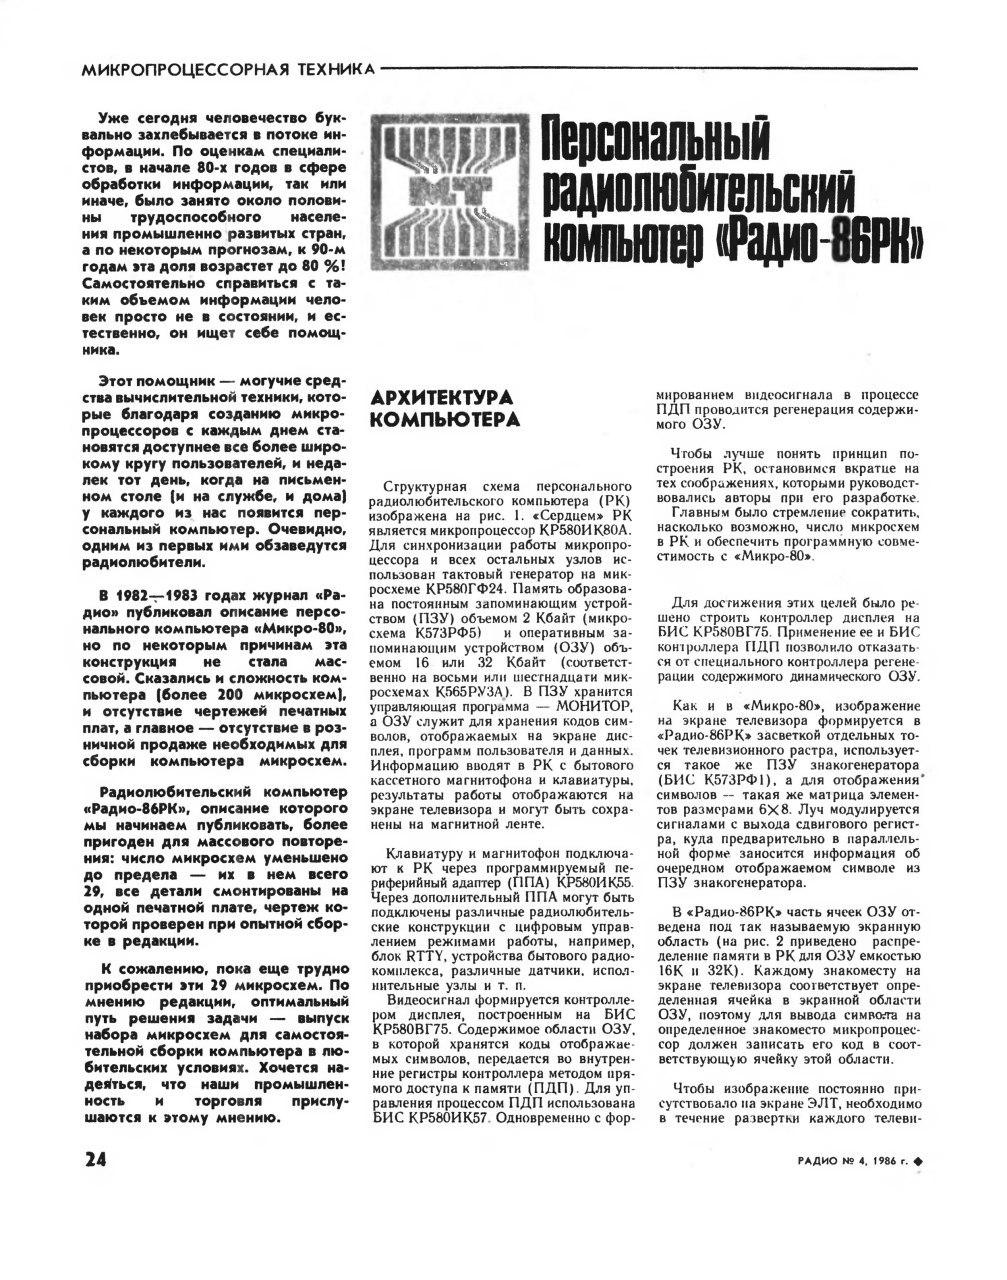 ZX Spectrum в России и СНГ: как стремление в онлайн трансформировало оффлайн - 2